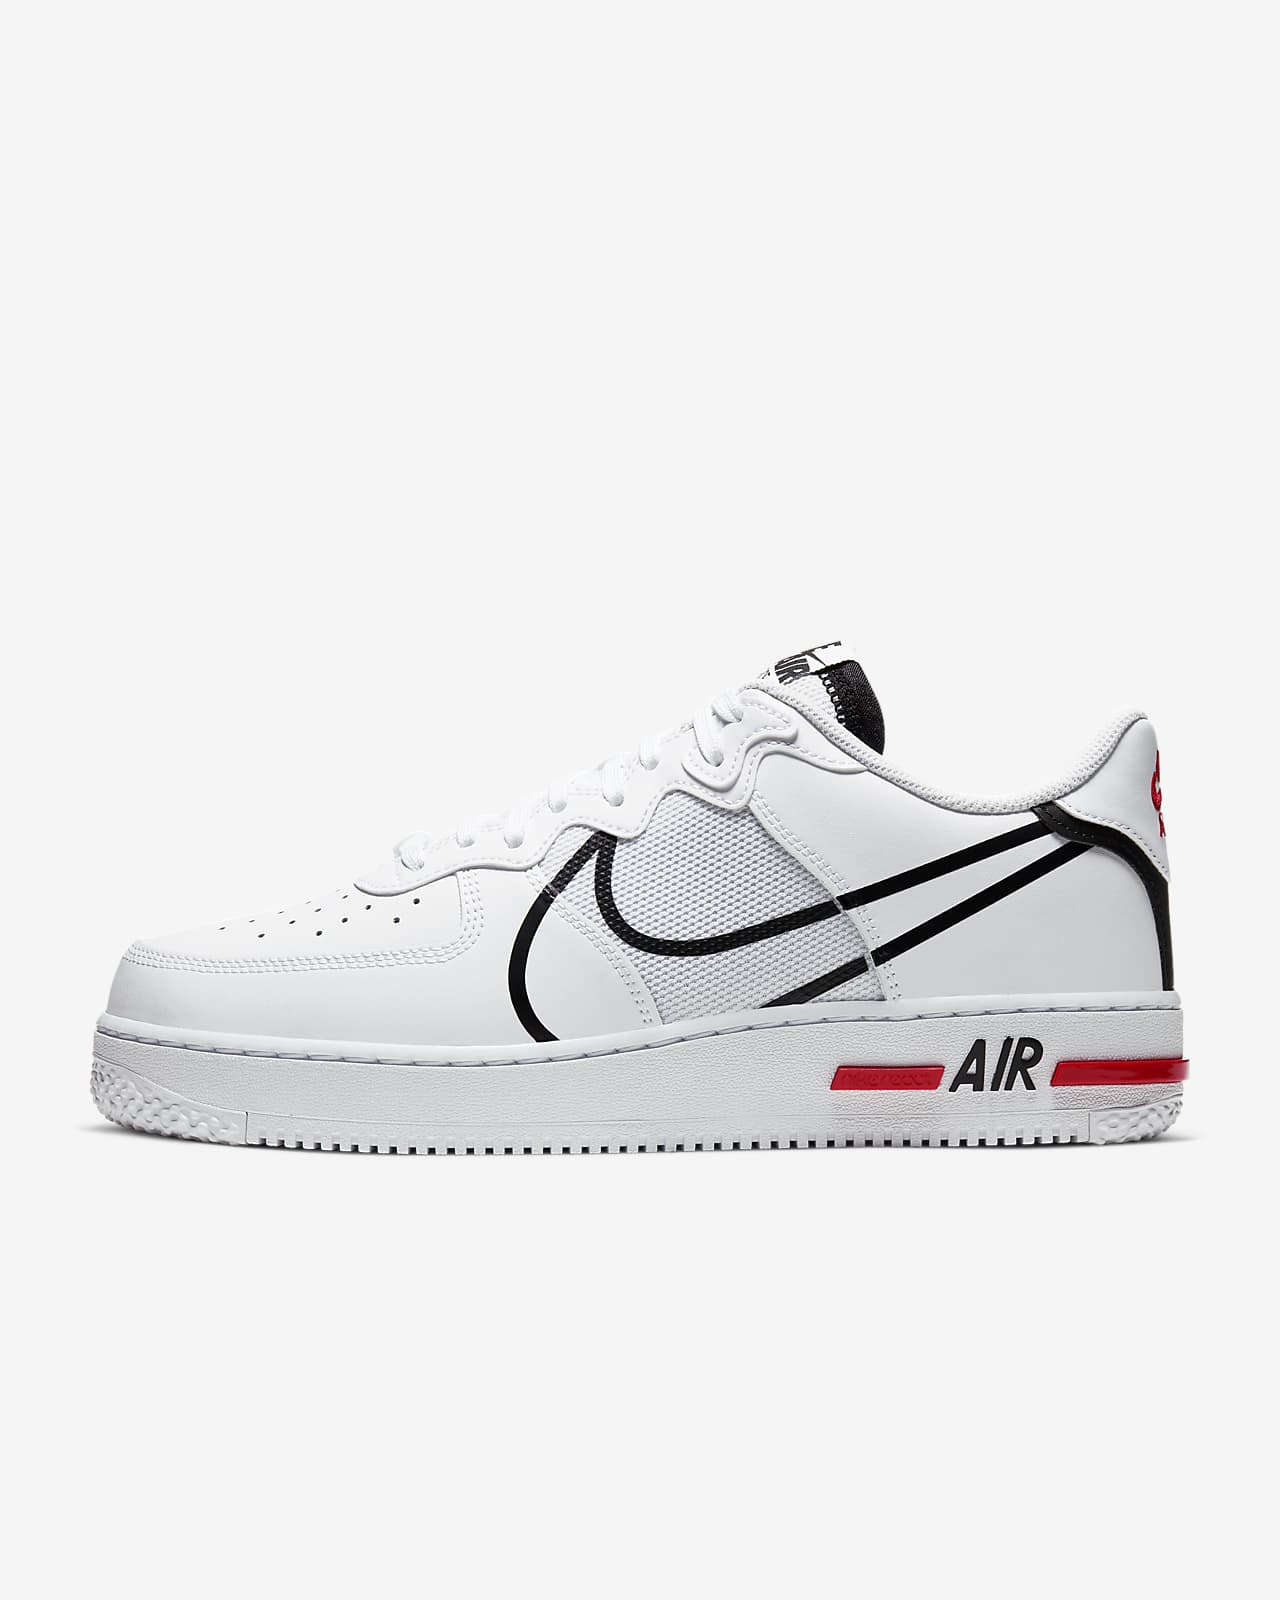 tale Lære udenad Vedhæft til Nike Air Force 1 React-sko til mænd. Nike DK